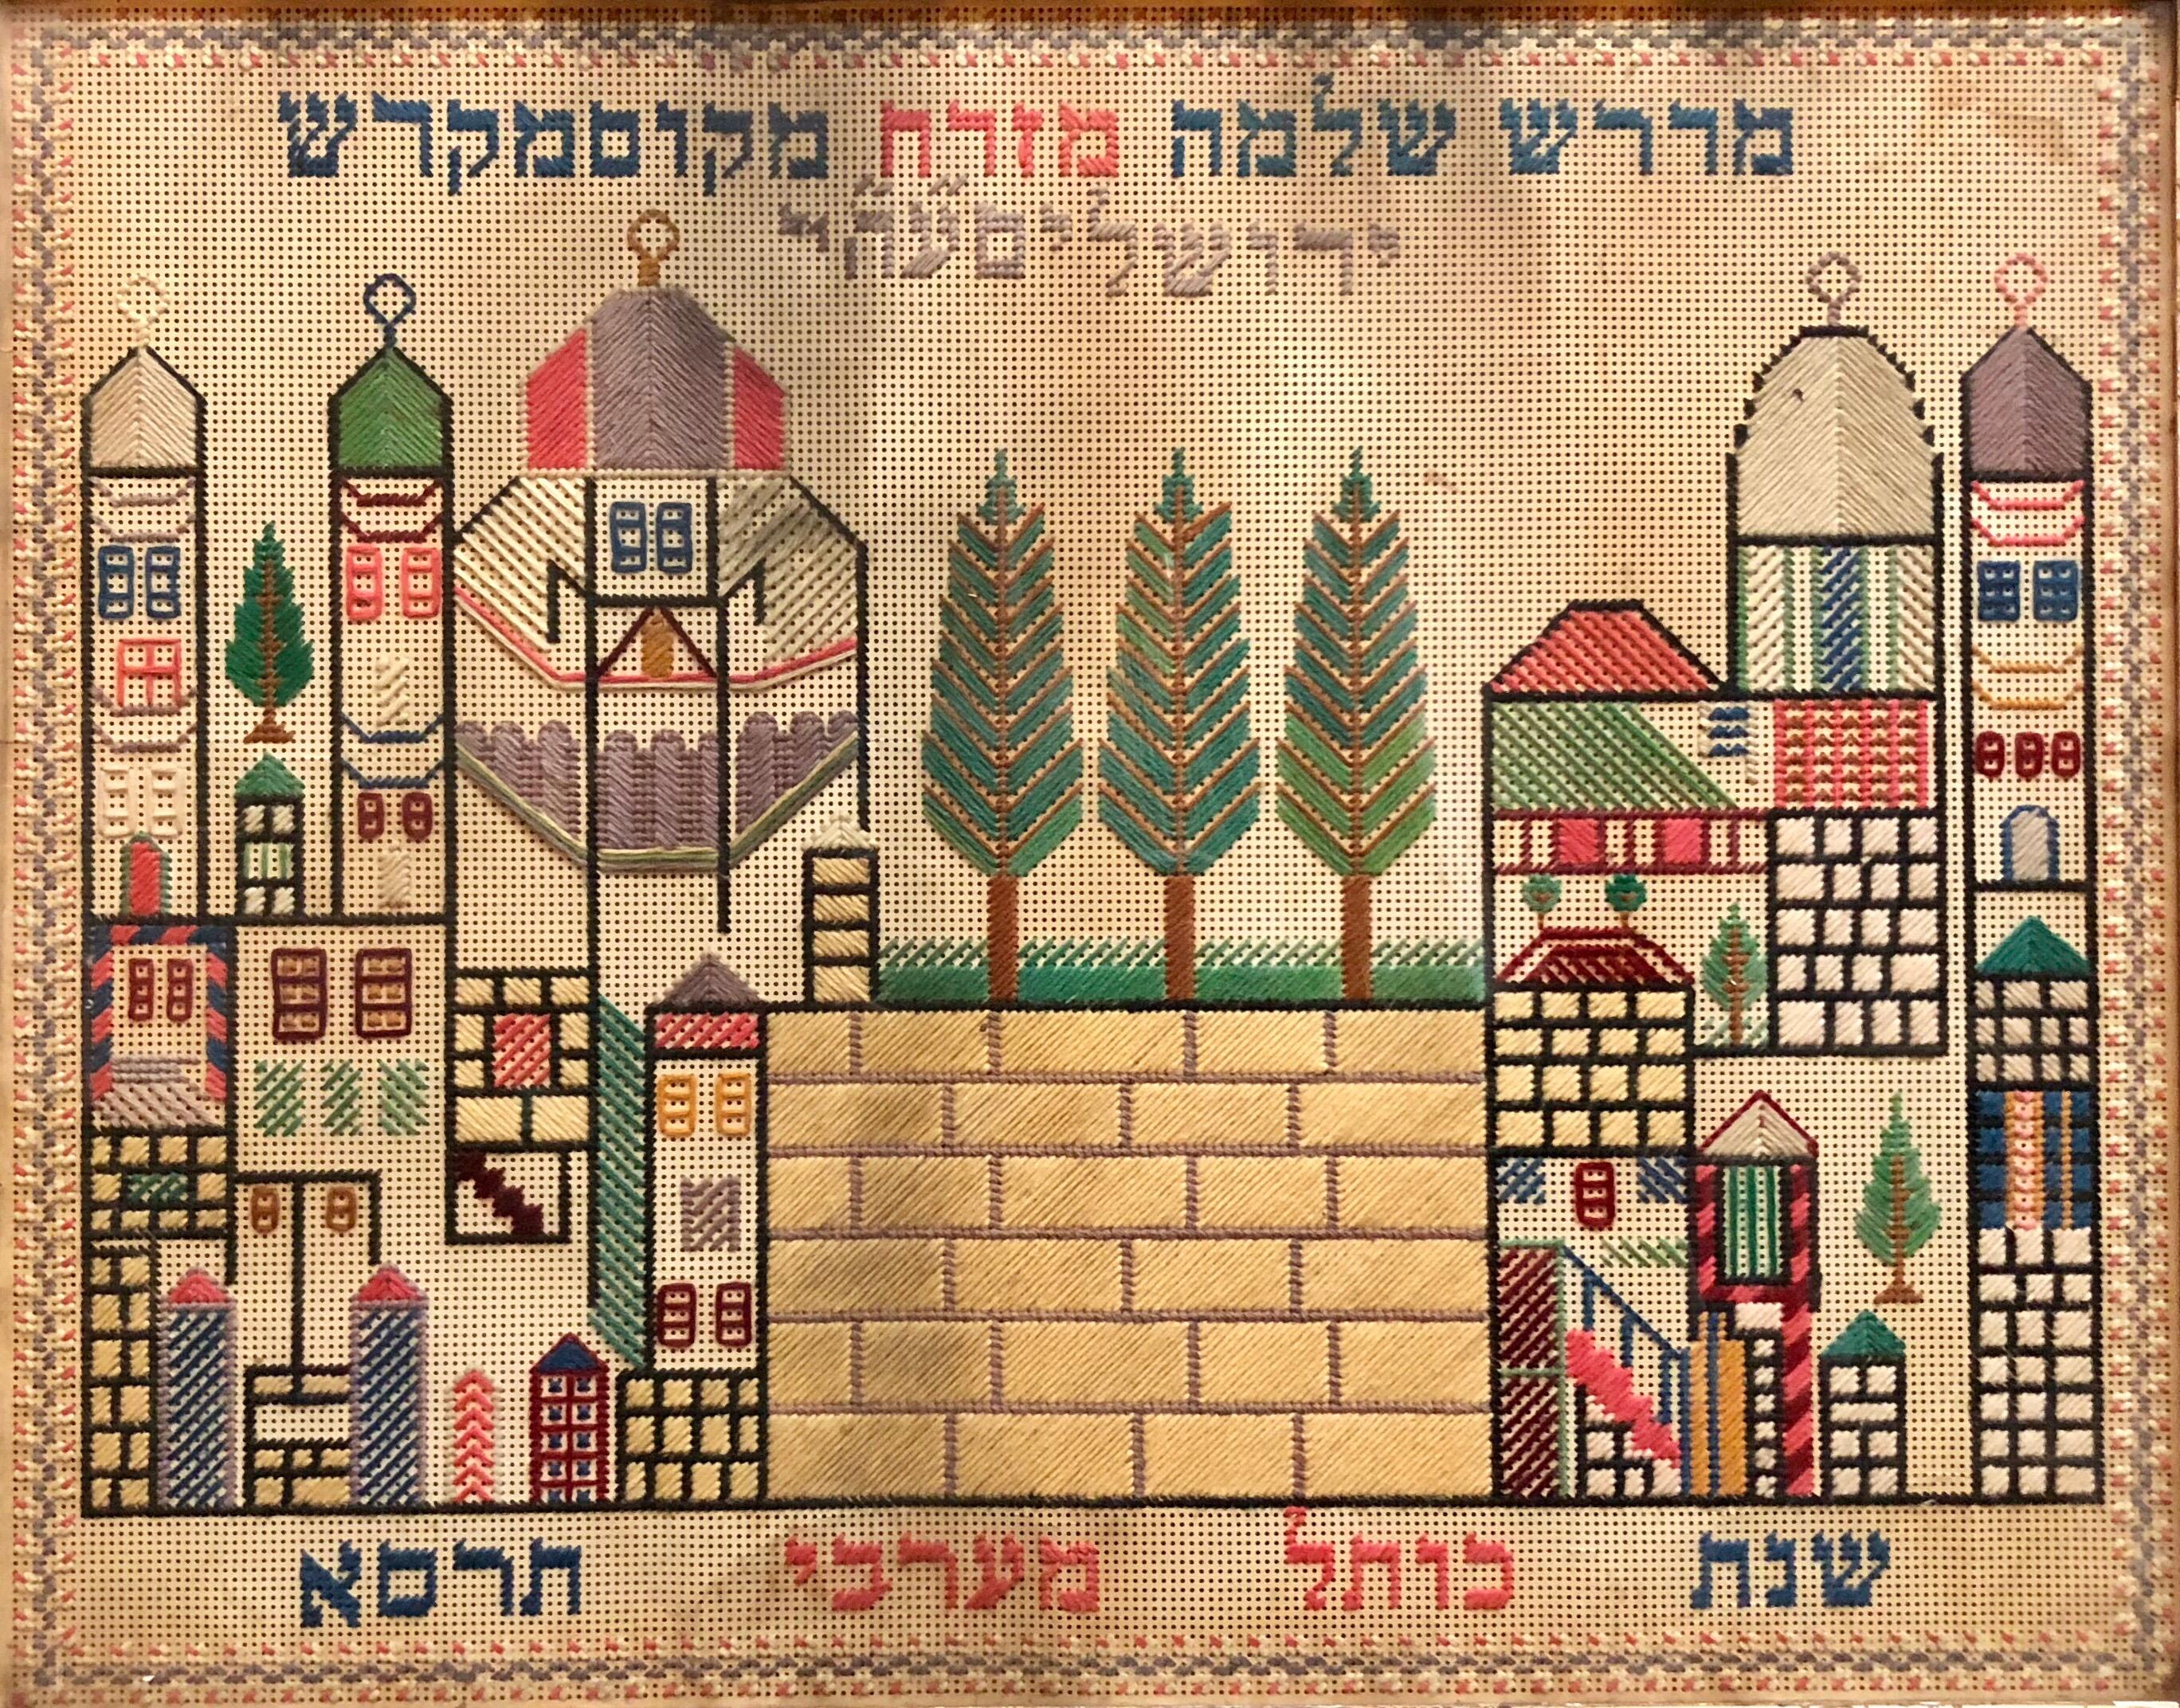 Punch point besticktes Muster:: Midrash Shlomo Jerusalem:: 1900/1901. (Es ist auf das jüdische Jahr 5661 datiert) 

Diese Art von Kunst und Kunsthandwerk entstammt einer langen Tradition der jüdischen Volkskunst. 
Viele dieser Künstler sind